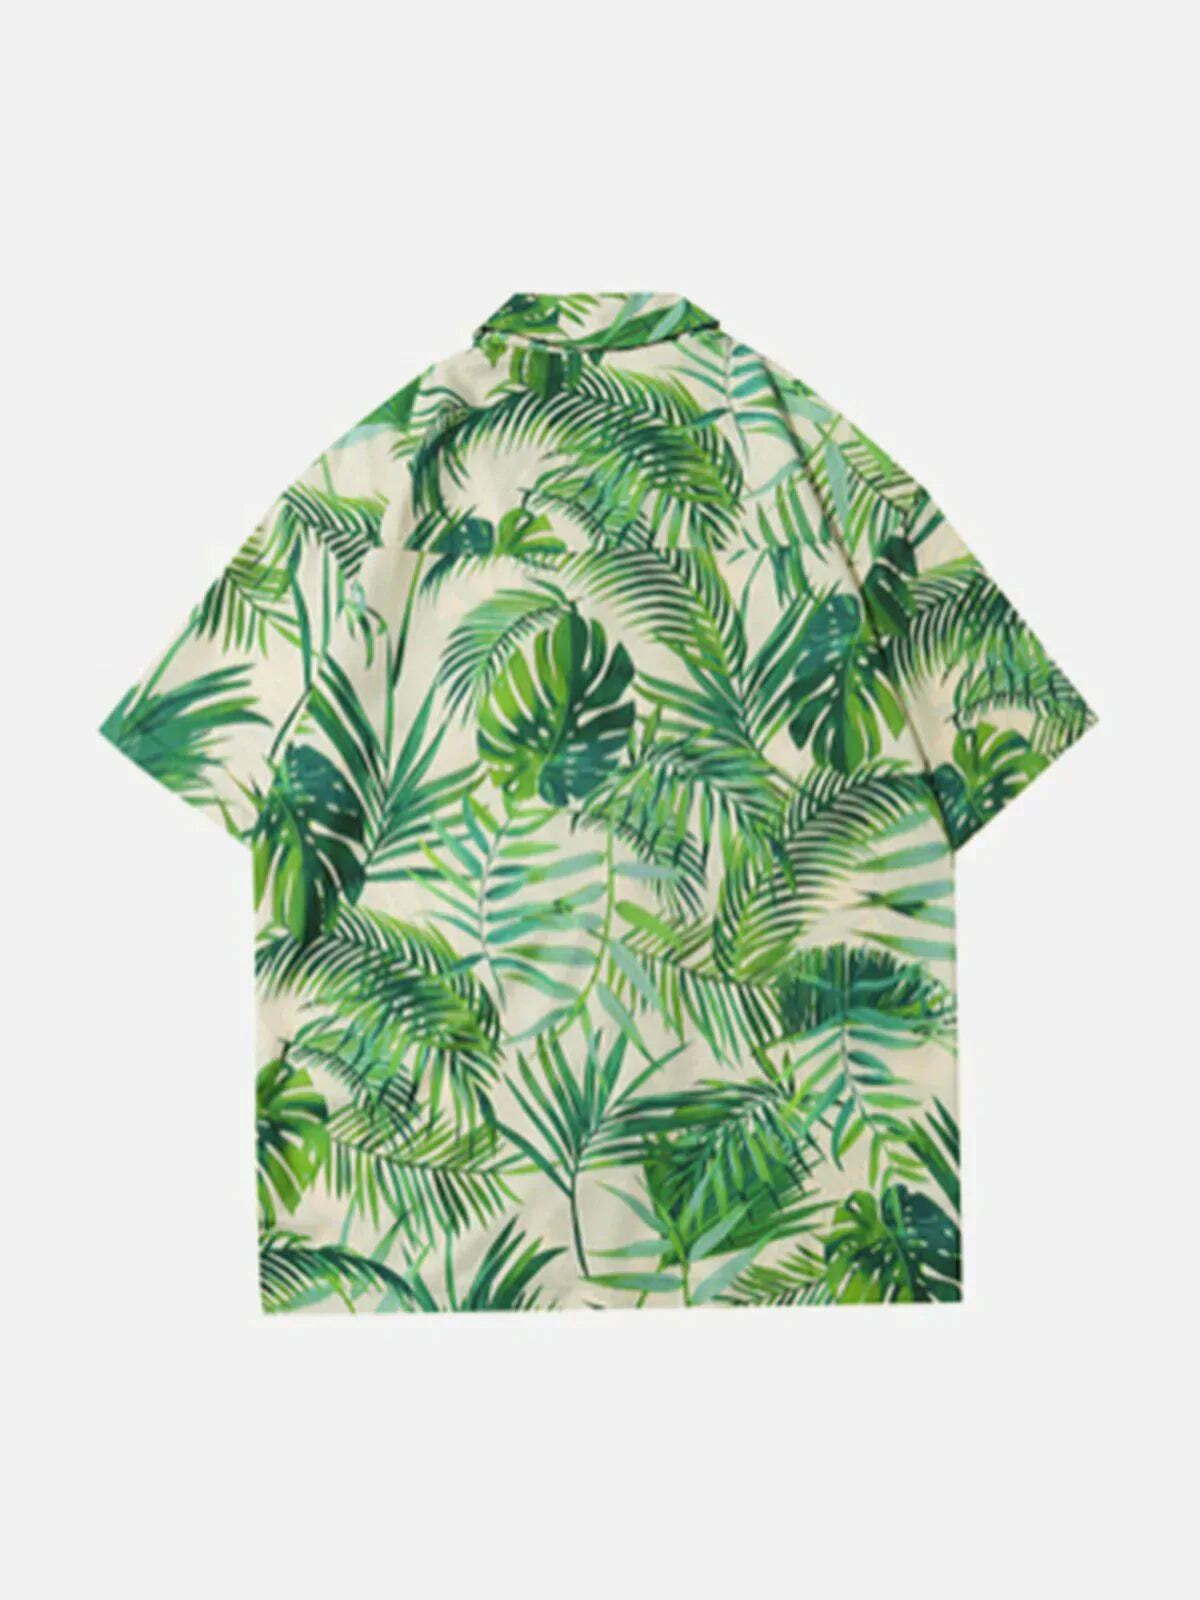 graffiti floral print shirt vibrant streetwear statement 7283